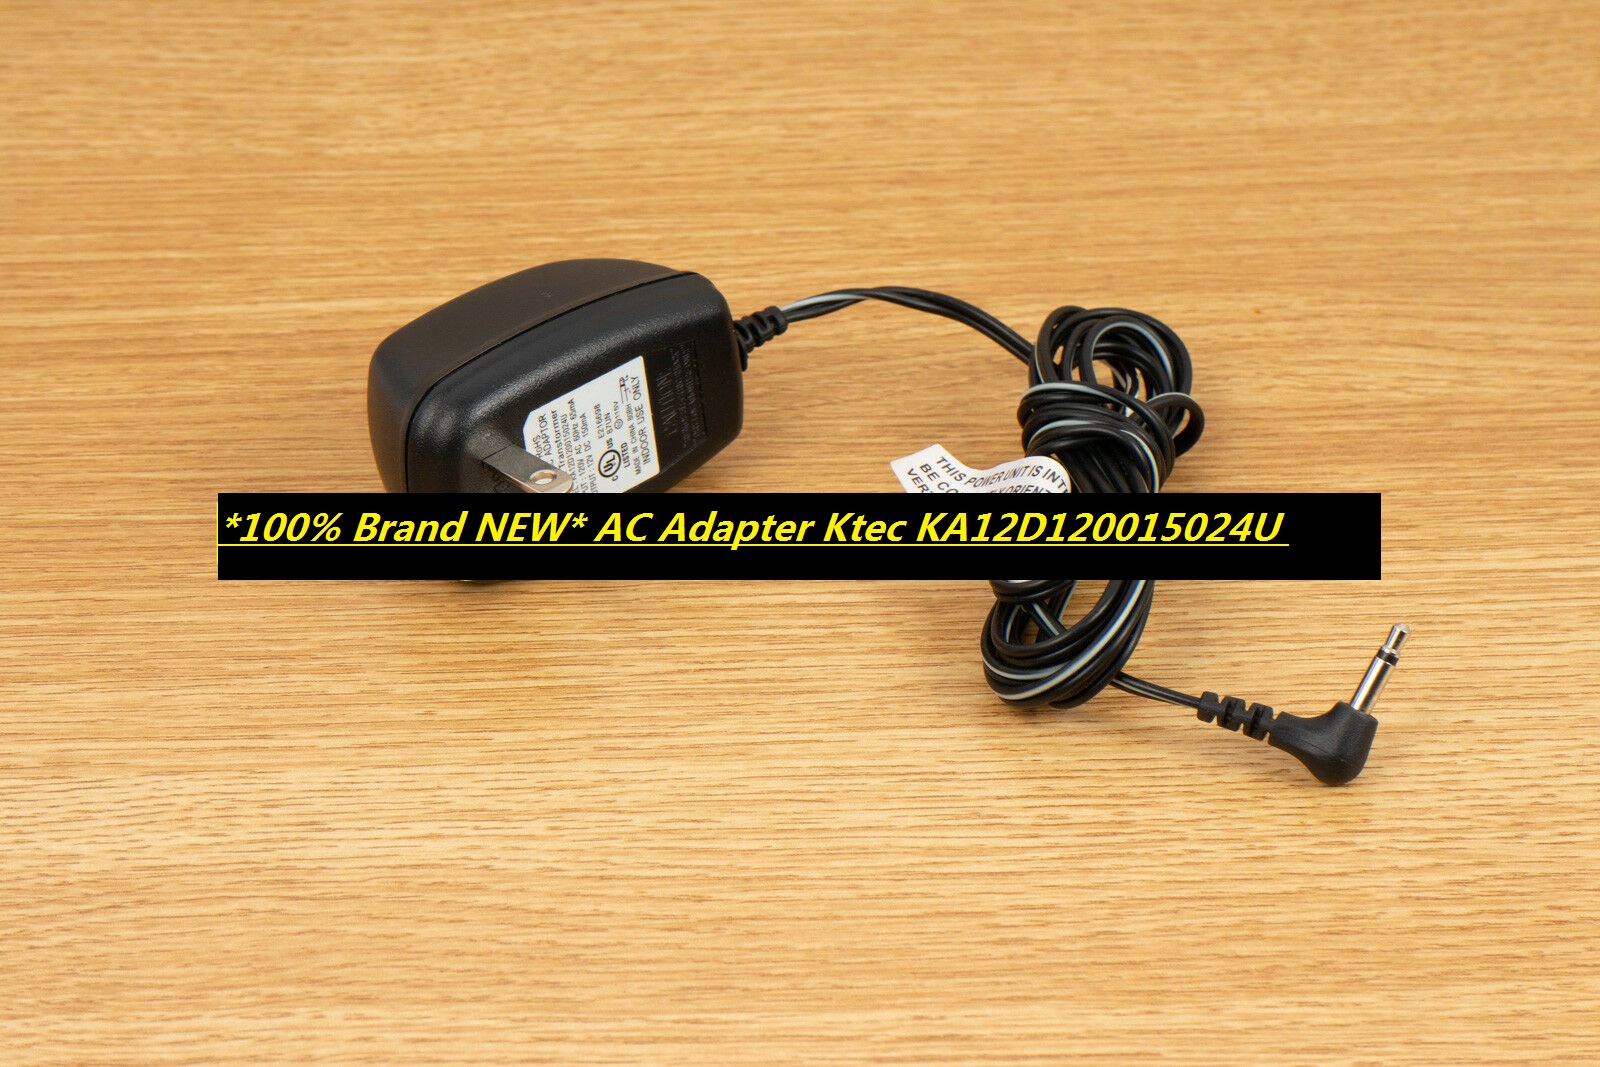 *100% Brand NEW* AC Adapter Ktec KA12D120015024U Power Supply